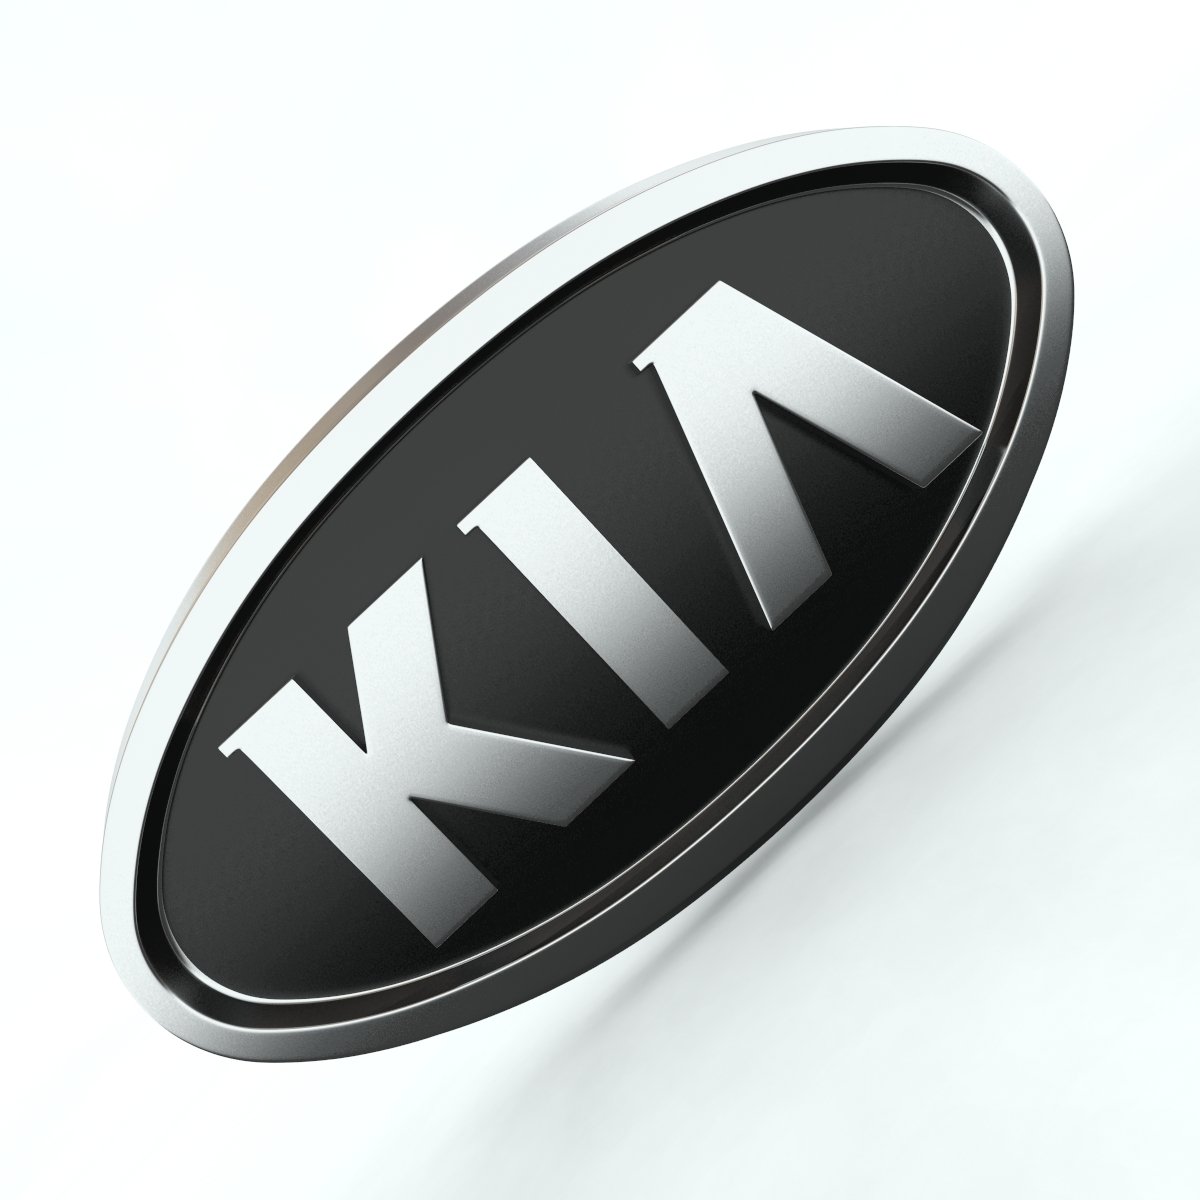 Киа меняет свой логотип